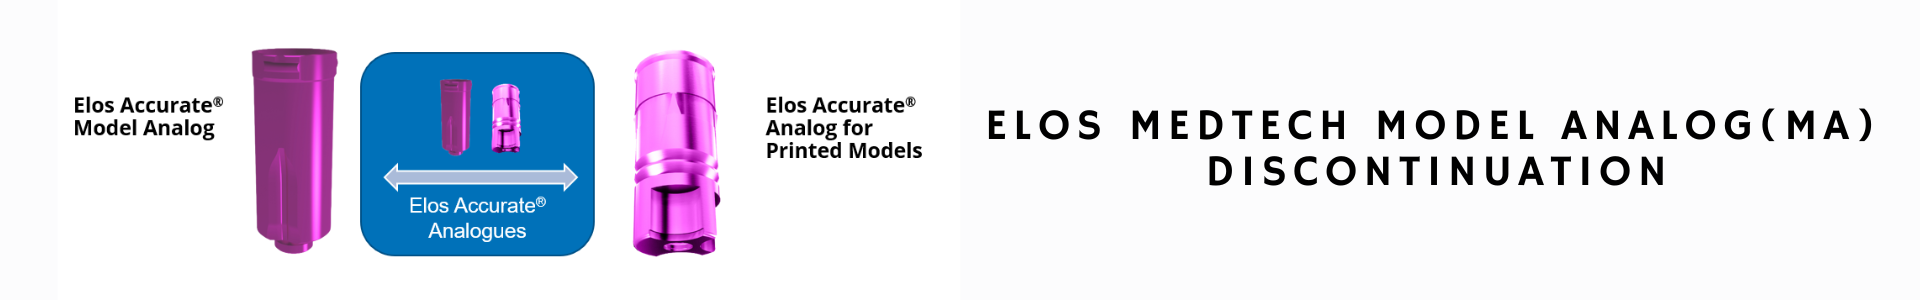 Elos Medtech Model Analog(MA)  Discontinuation